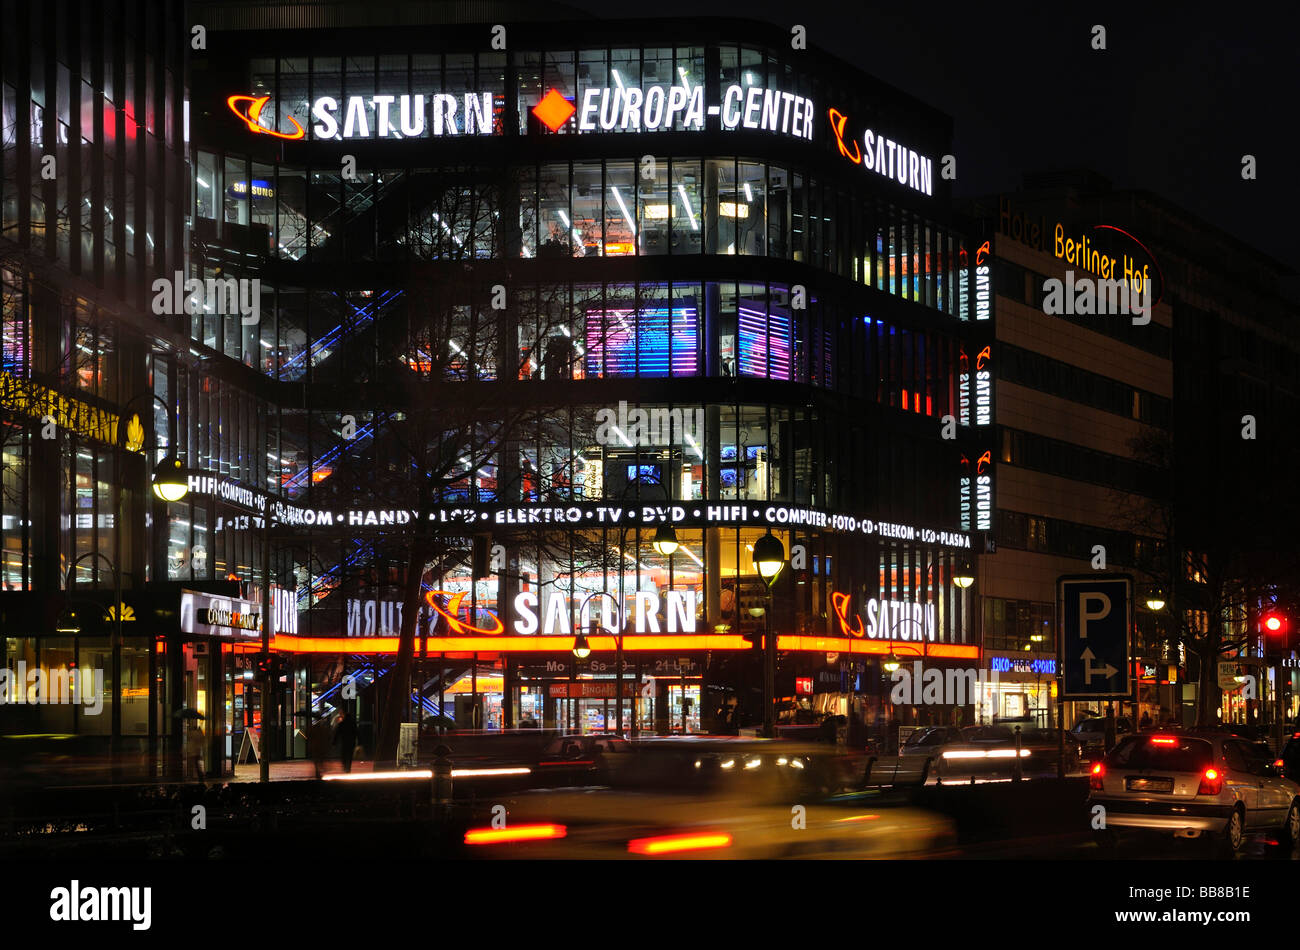 Elektronik-Fachhändler Saturn Flagshipstore in der Europa-Center, Tauentzien Straße, Berlin, Deutschland Stockfoto